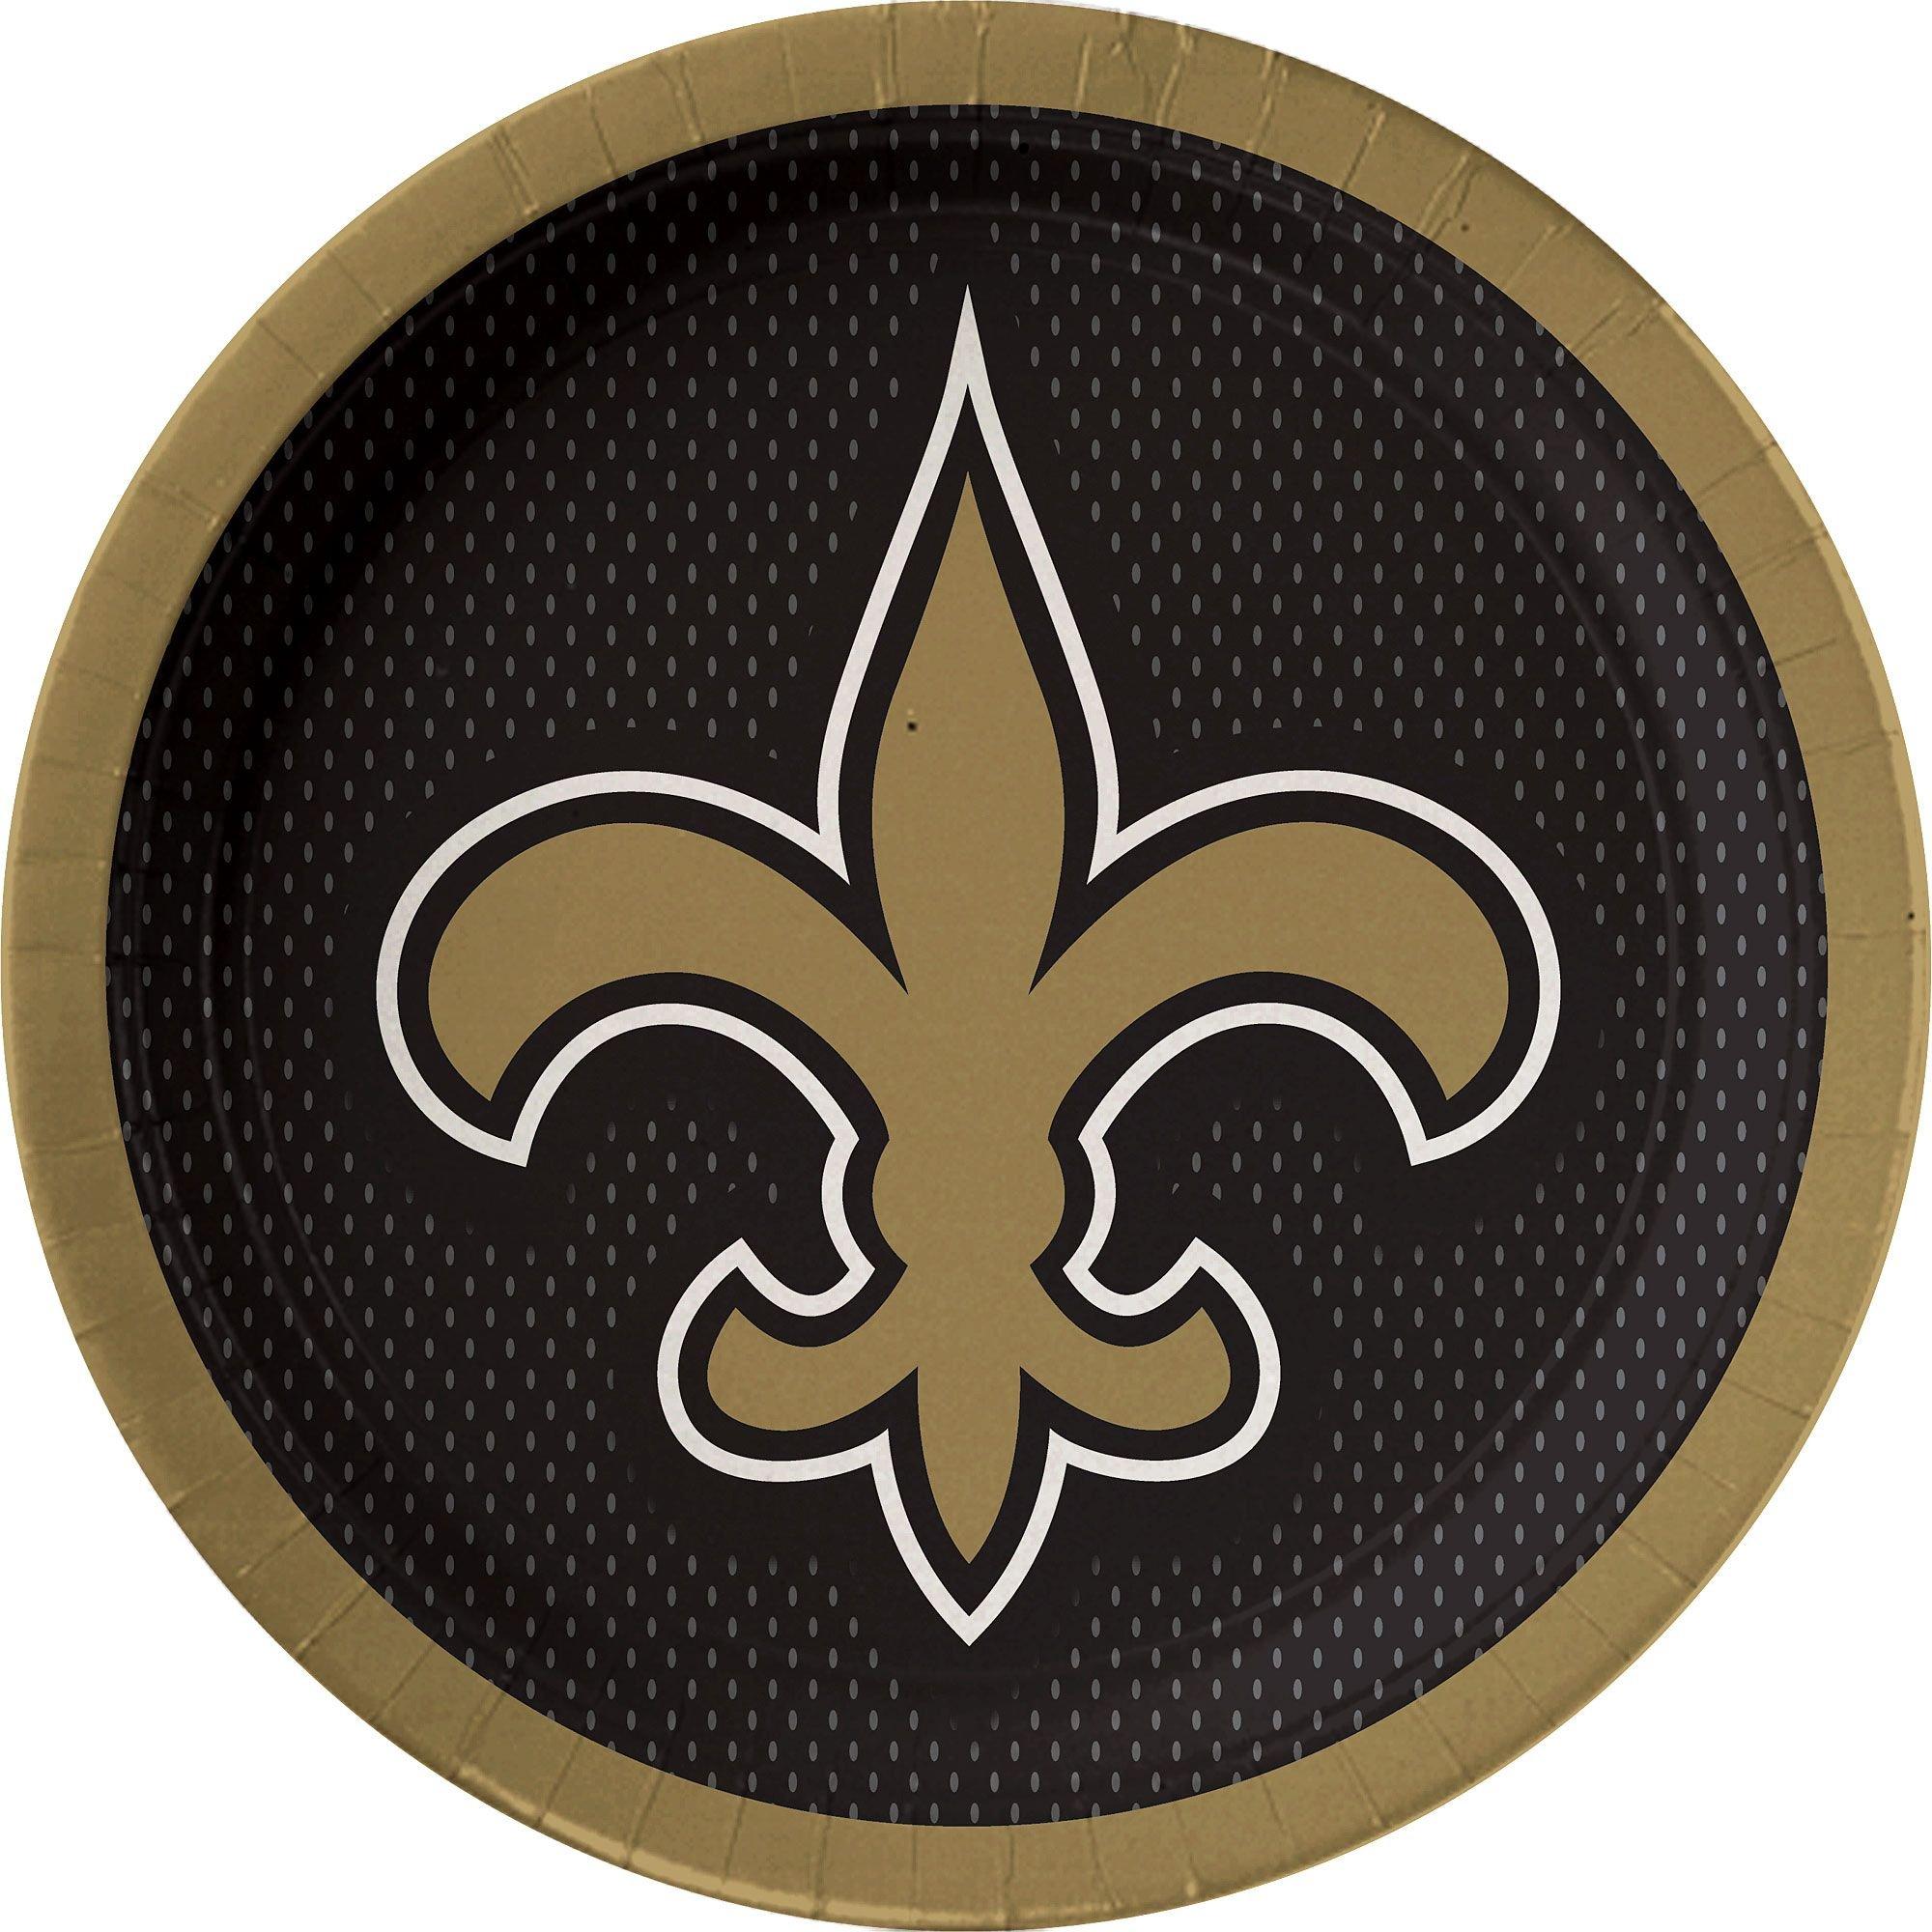 New Orleans Saints Patch, NFL Sports Team Emblem, Size: X